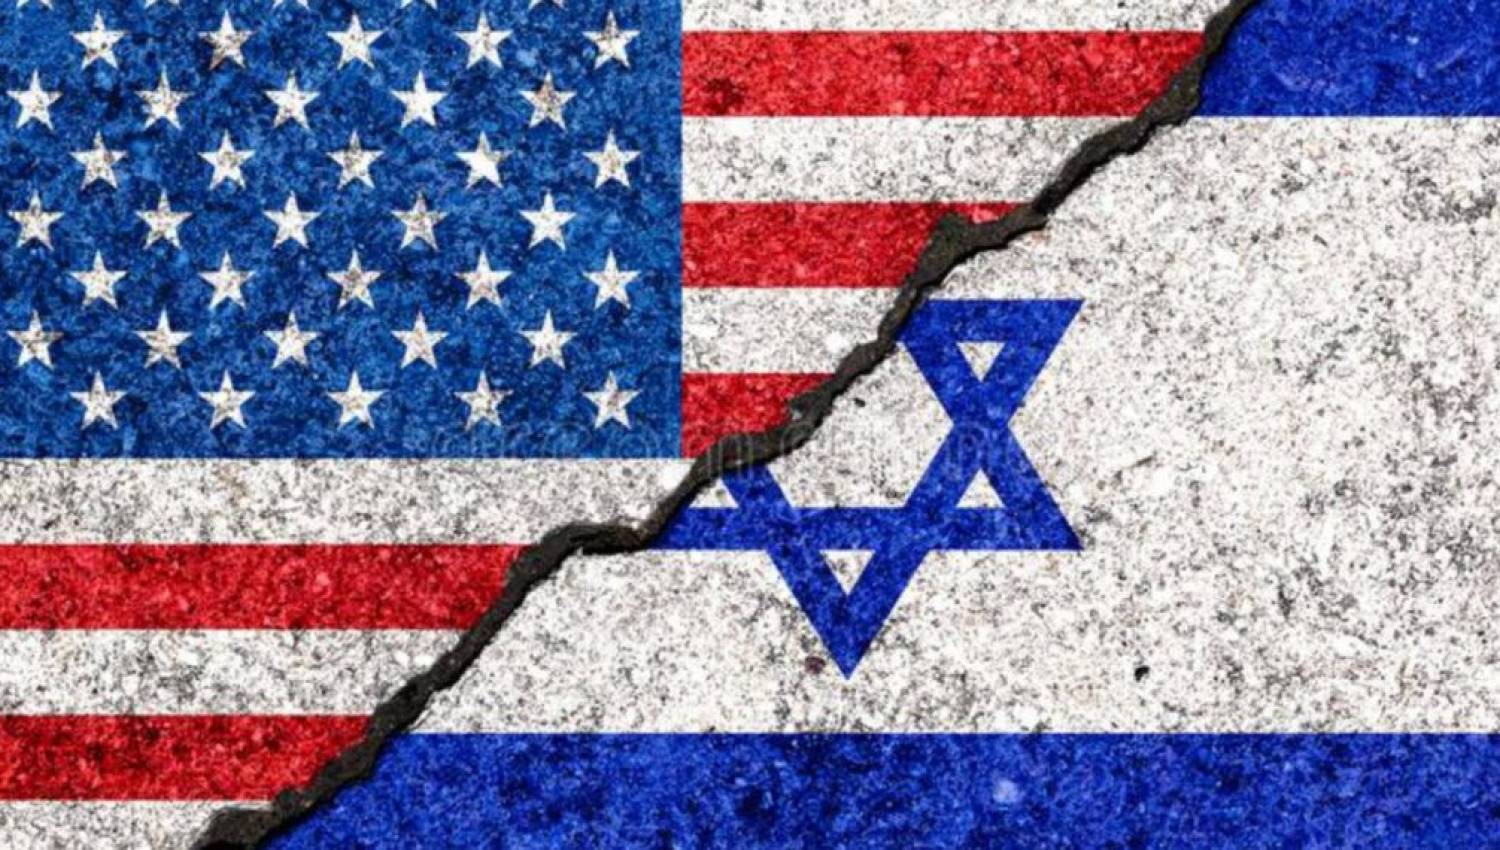 אובדן ישראל: ניוון ההשפעה האמריקאית במערב אסיה